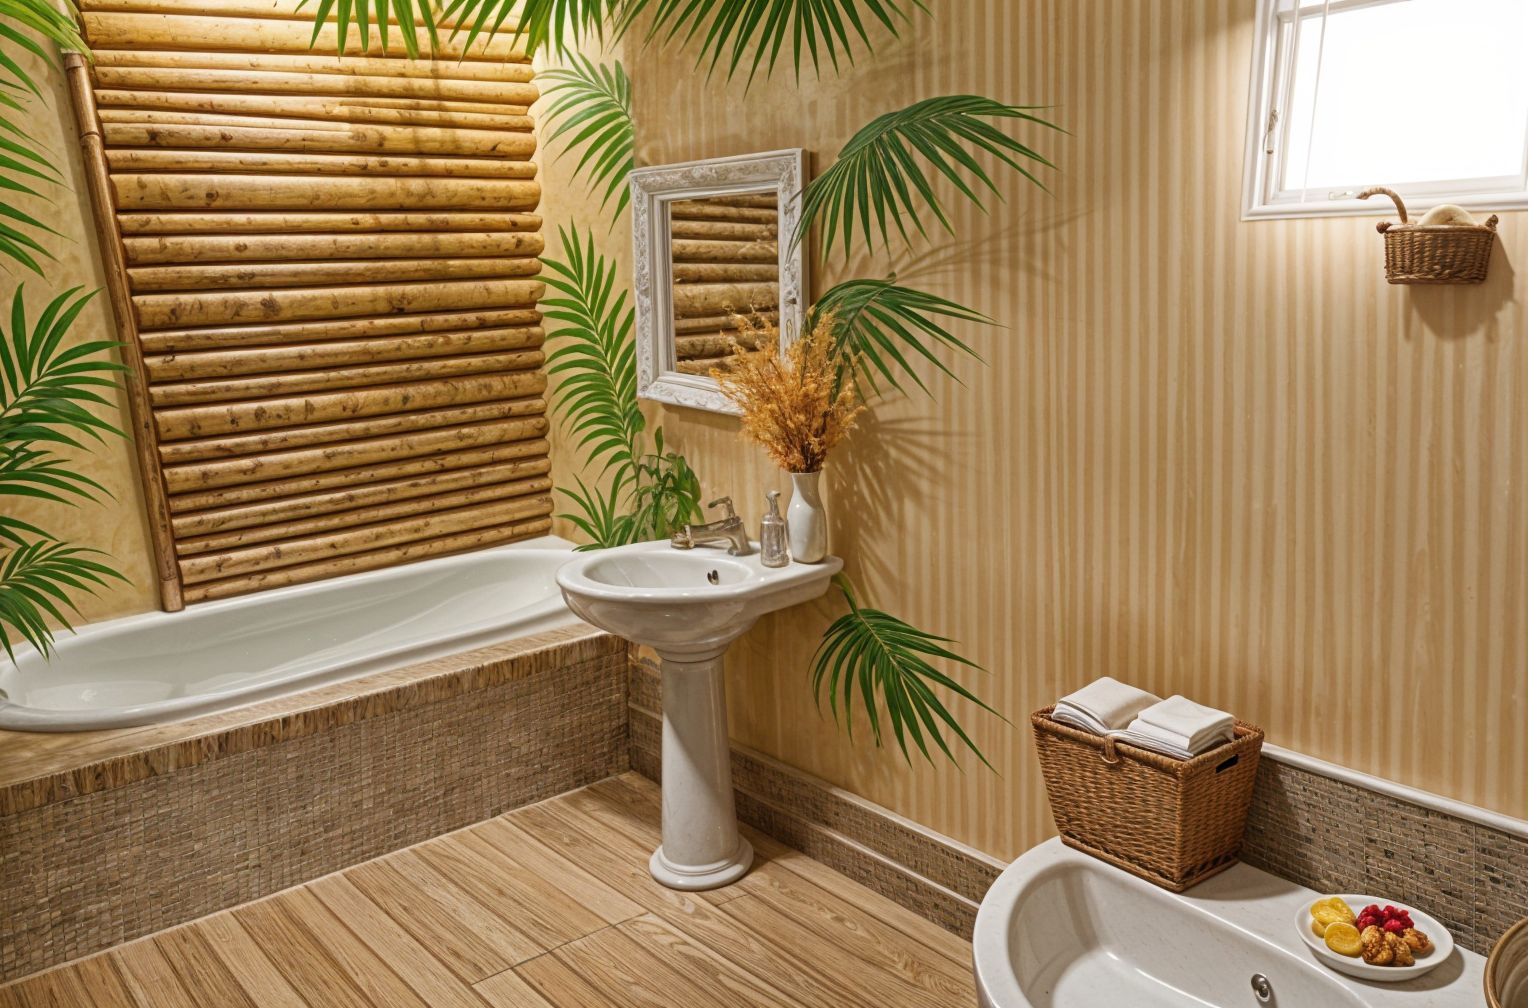 Tropical Hotel Bathroom